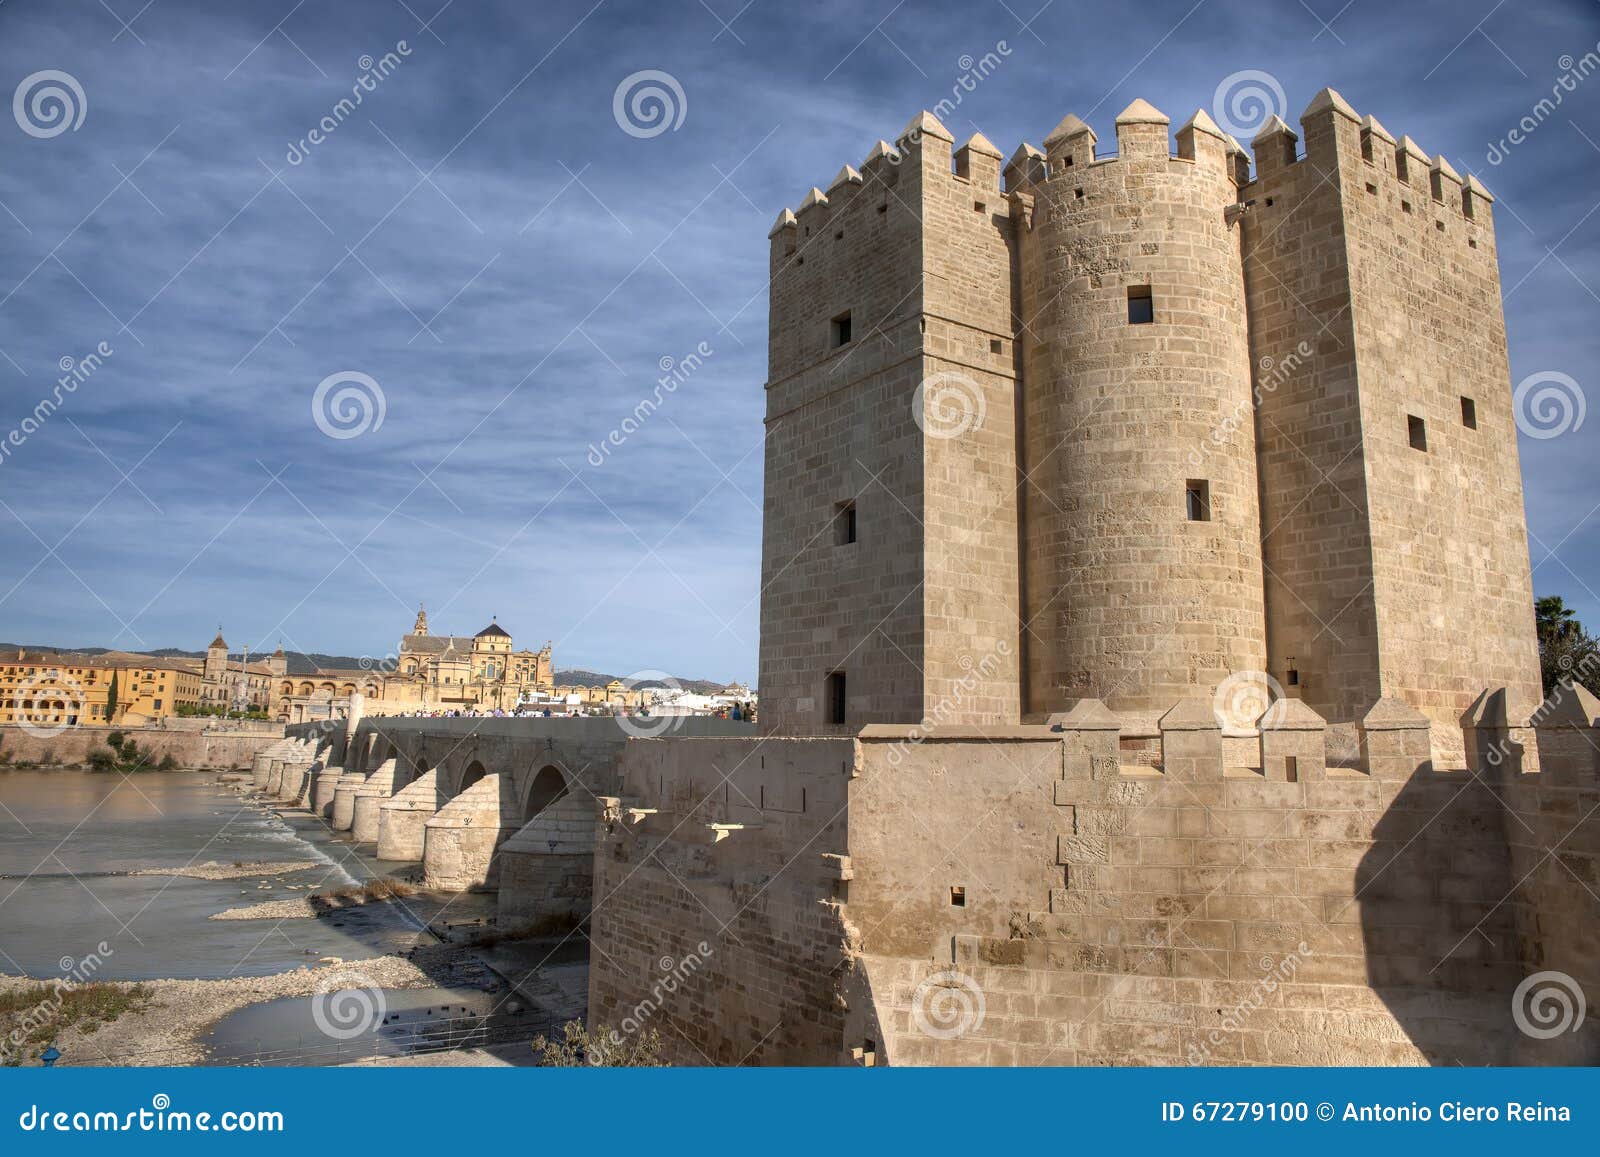 cÃÂ³rdoba monumental city of andalusia, spain